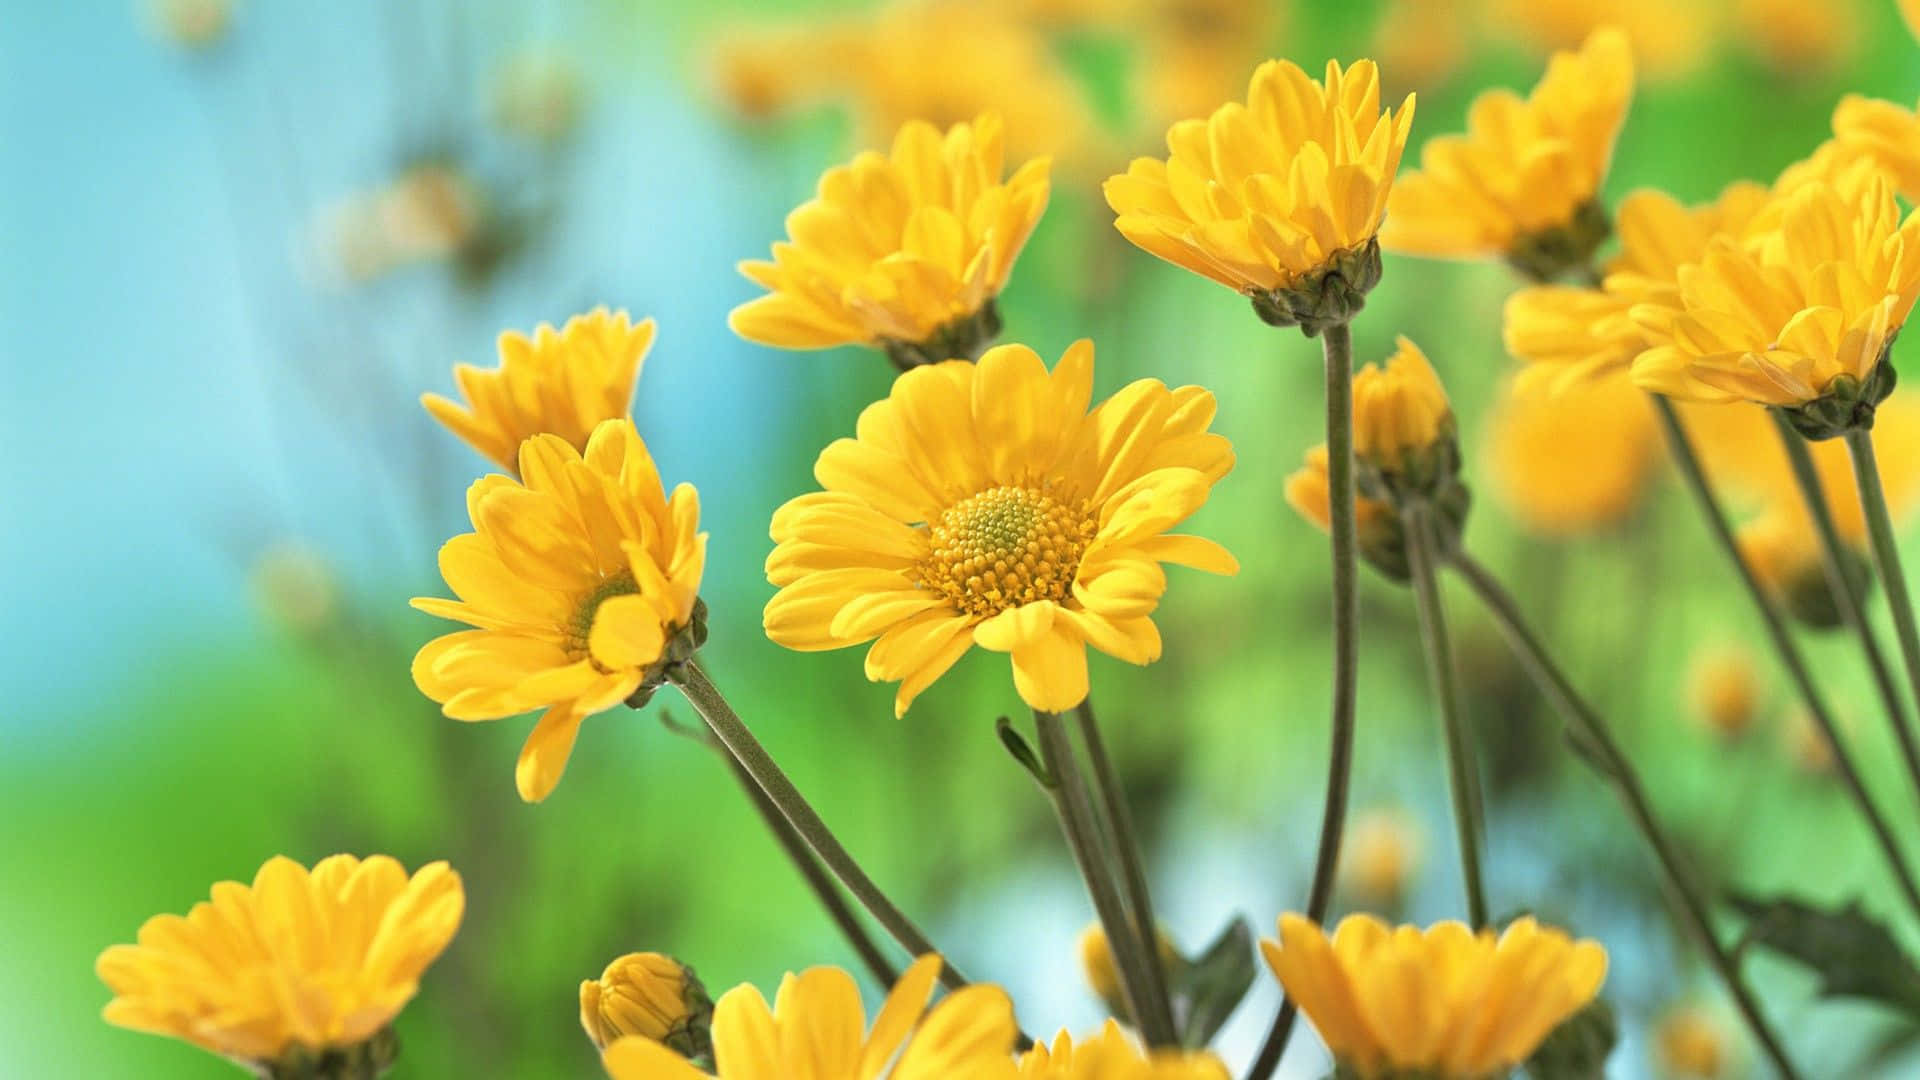 Schönechrysanthemen In Gelbem Ästhetischem Blumendesign Für Den Desktop Wallpaper